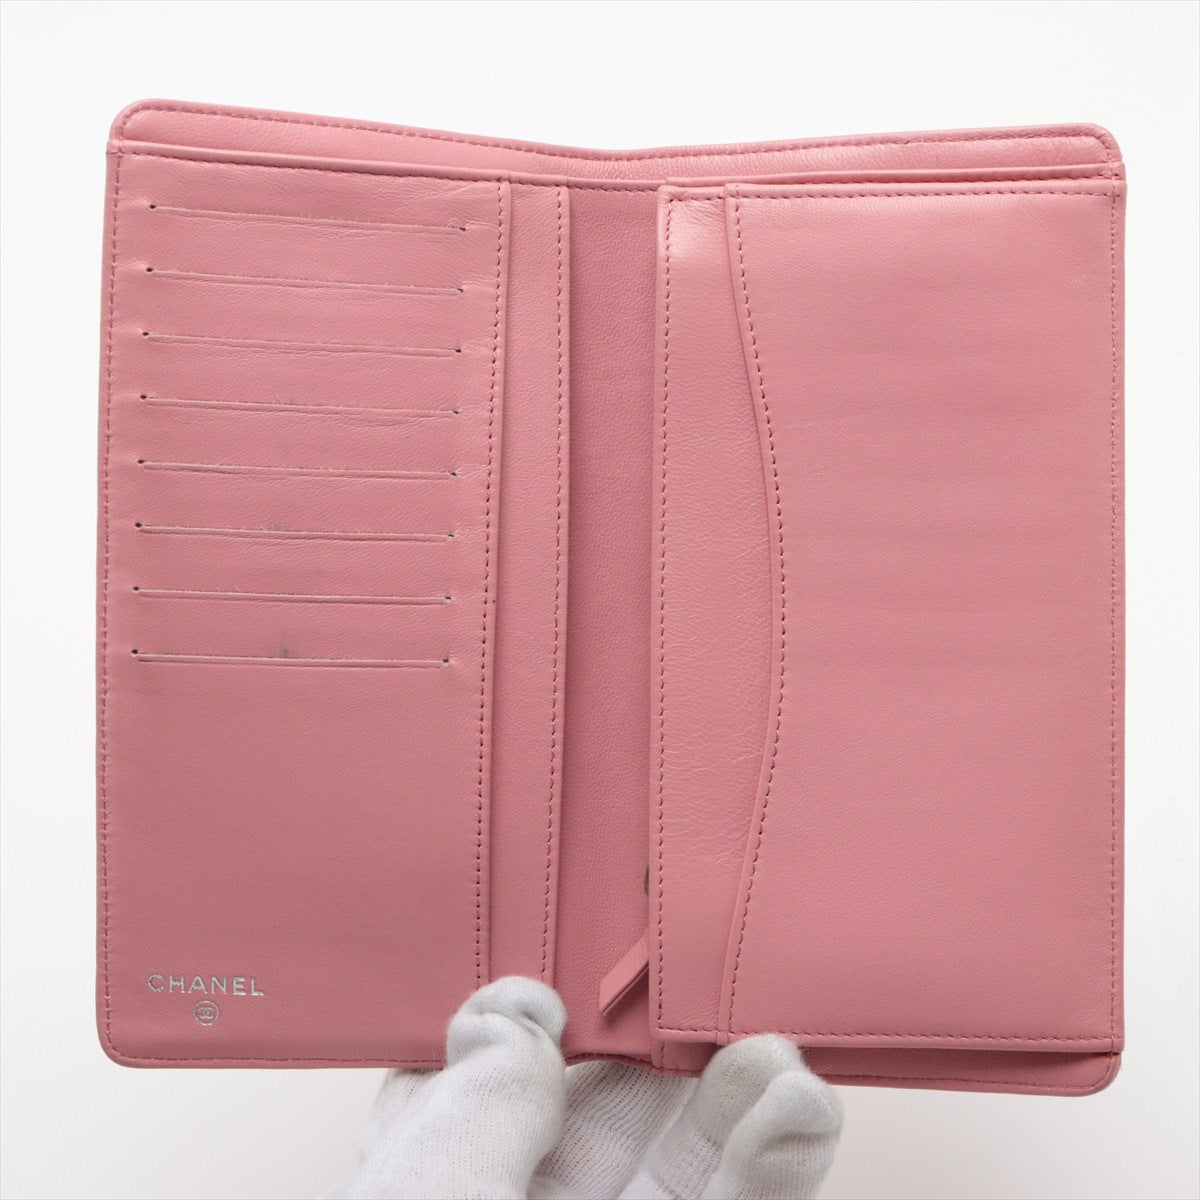 シャネル マトラッセ ラムスキン 財布 二つ折り財布 ピンク シルバー金具 14番台